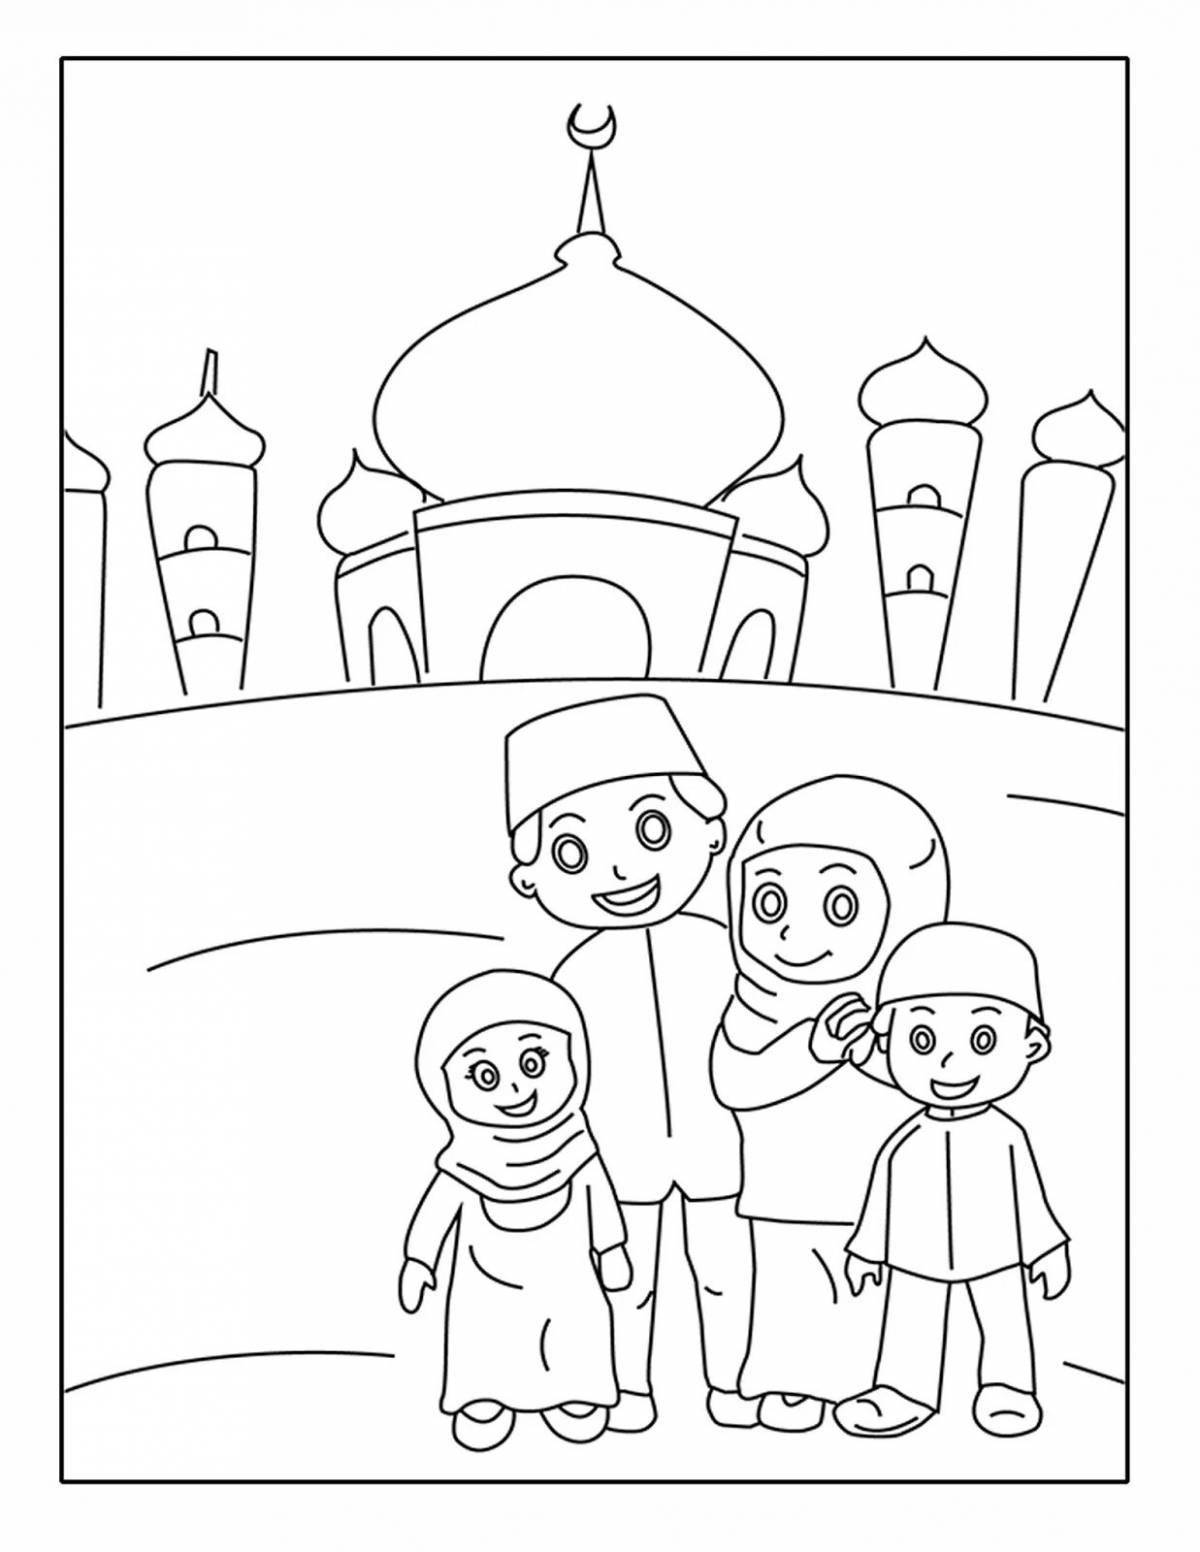 Creative muslim family coloring book